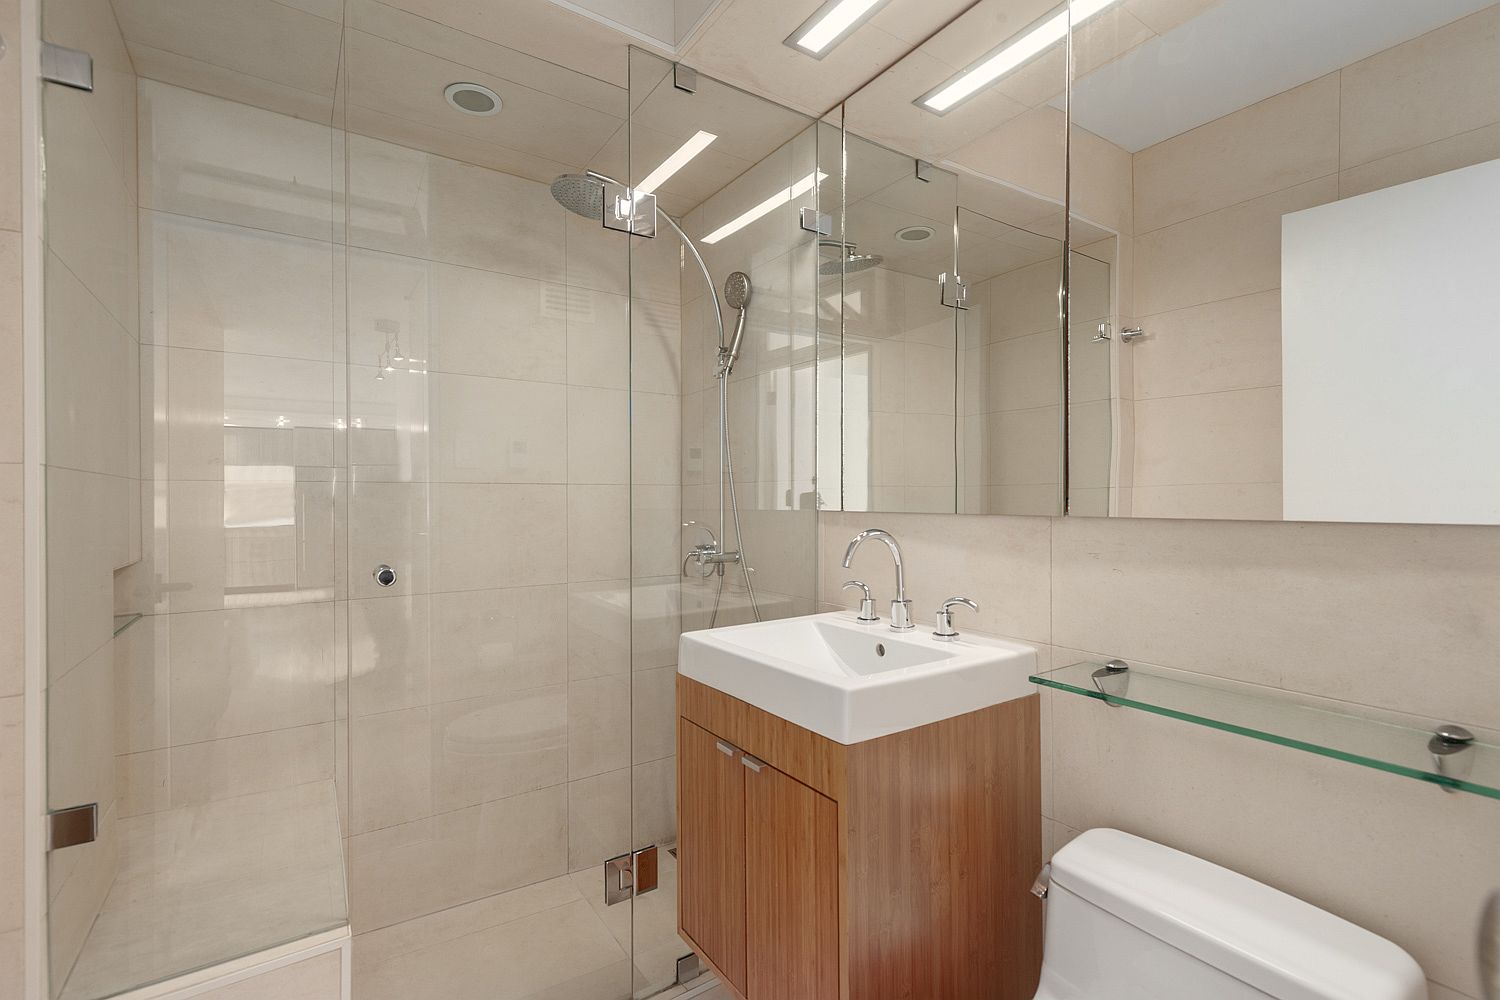 Elegant-and-efficient-contemporary-bathroom-design